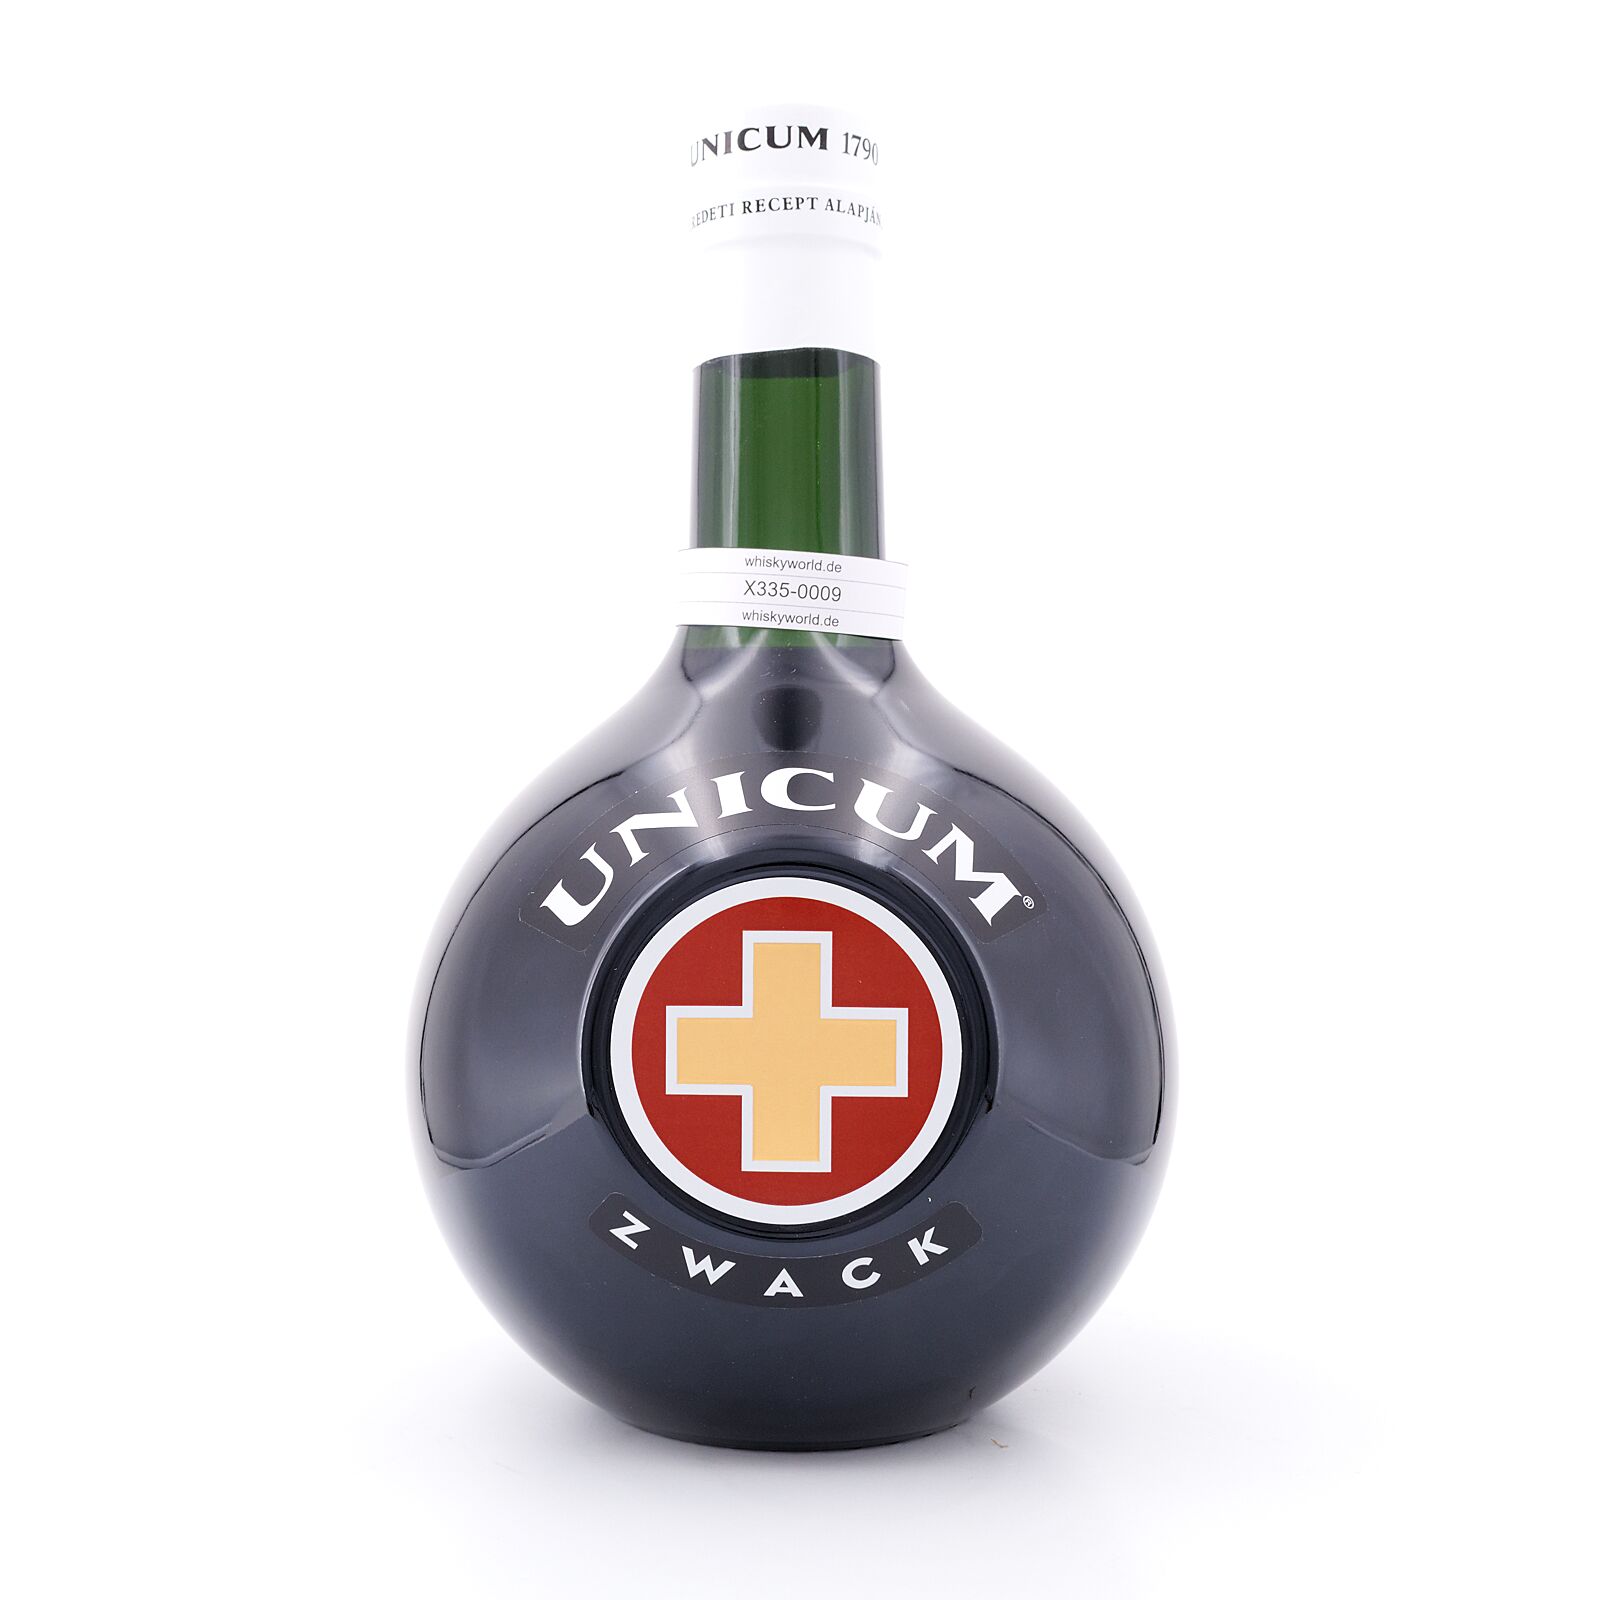 Zwack Unicum vol 40.0% Flasche Liter/ Liter Kräuterlikör 3 3